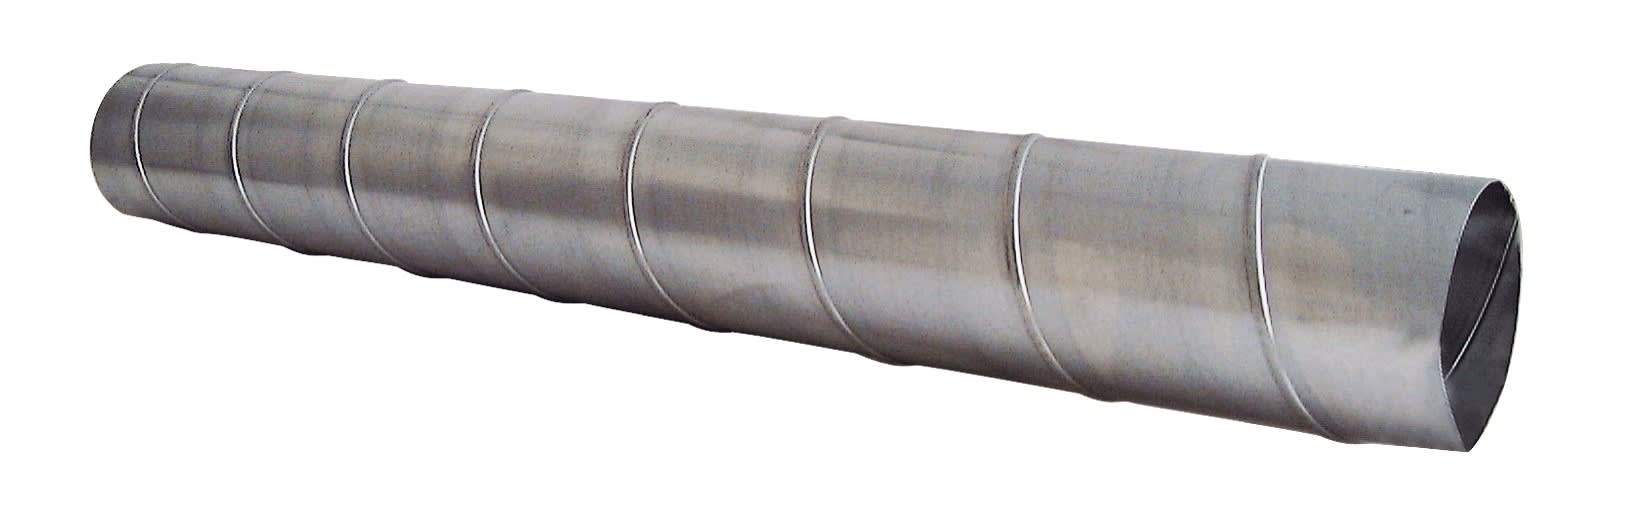 S&P - Conduit spiralé acier galvanisé, D 200 mm, longueur 1 m